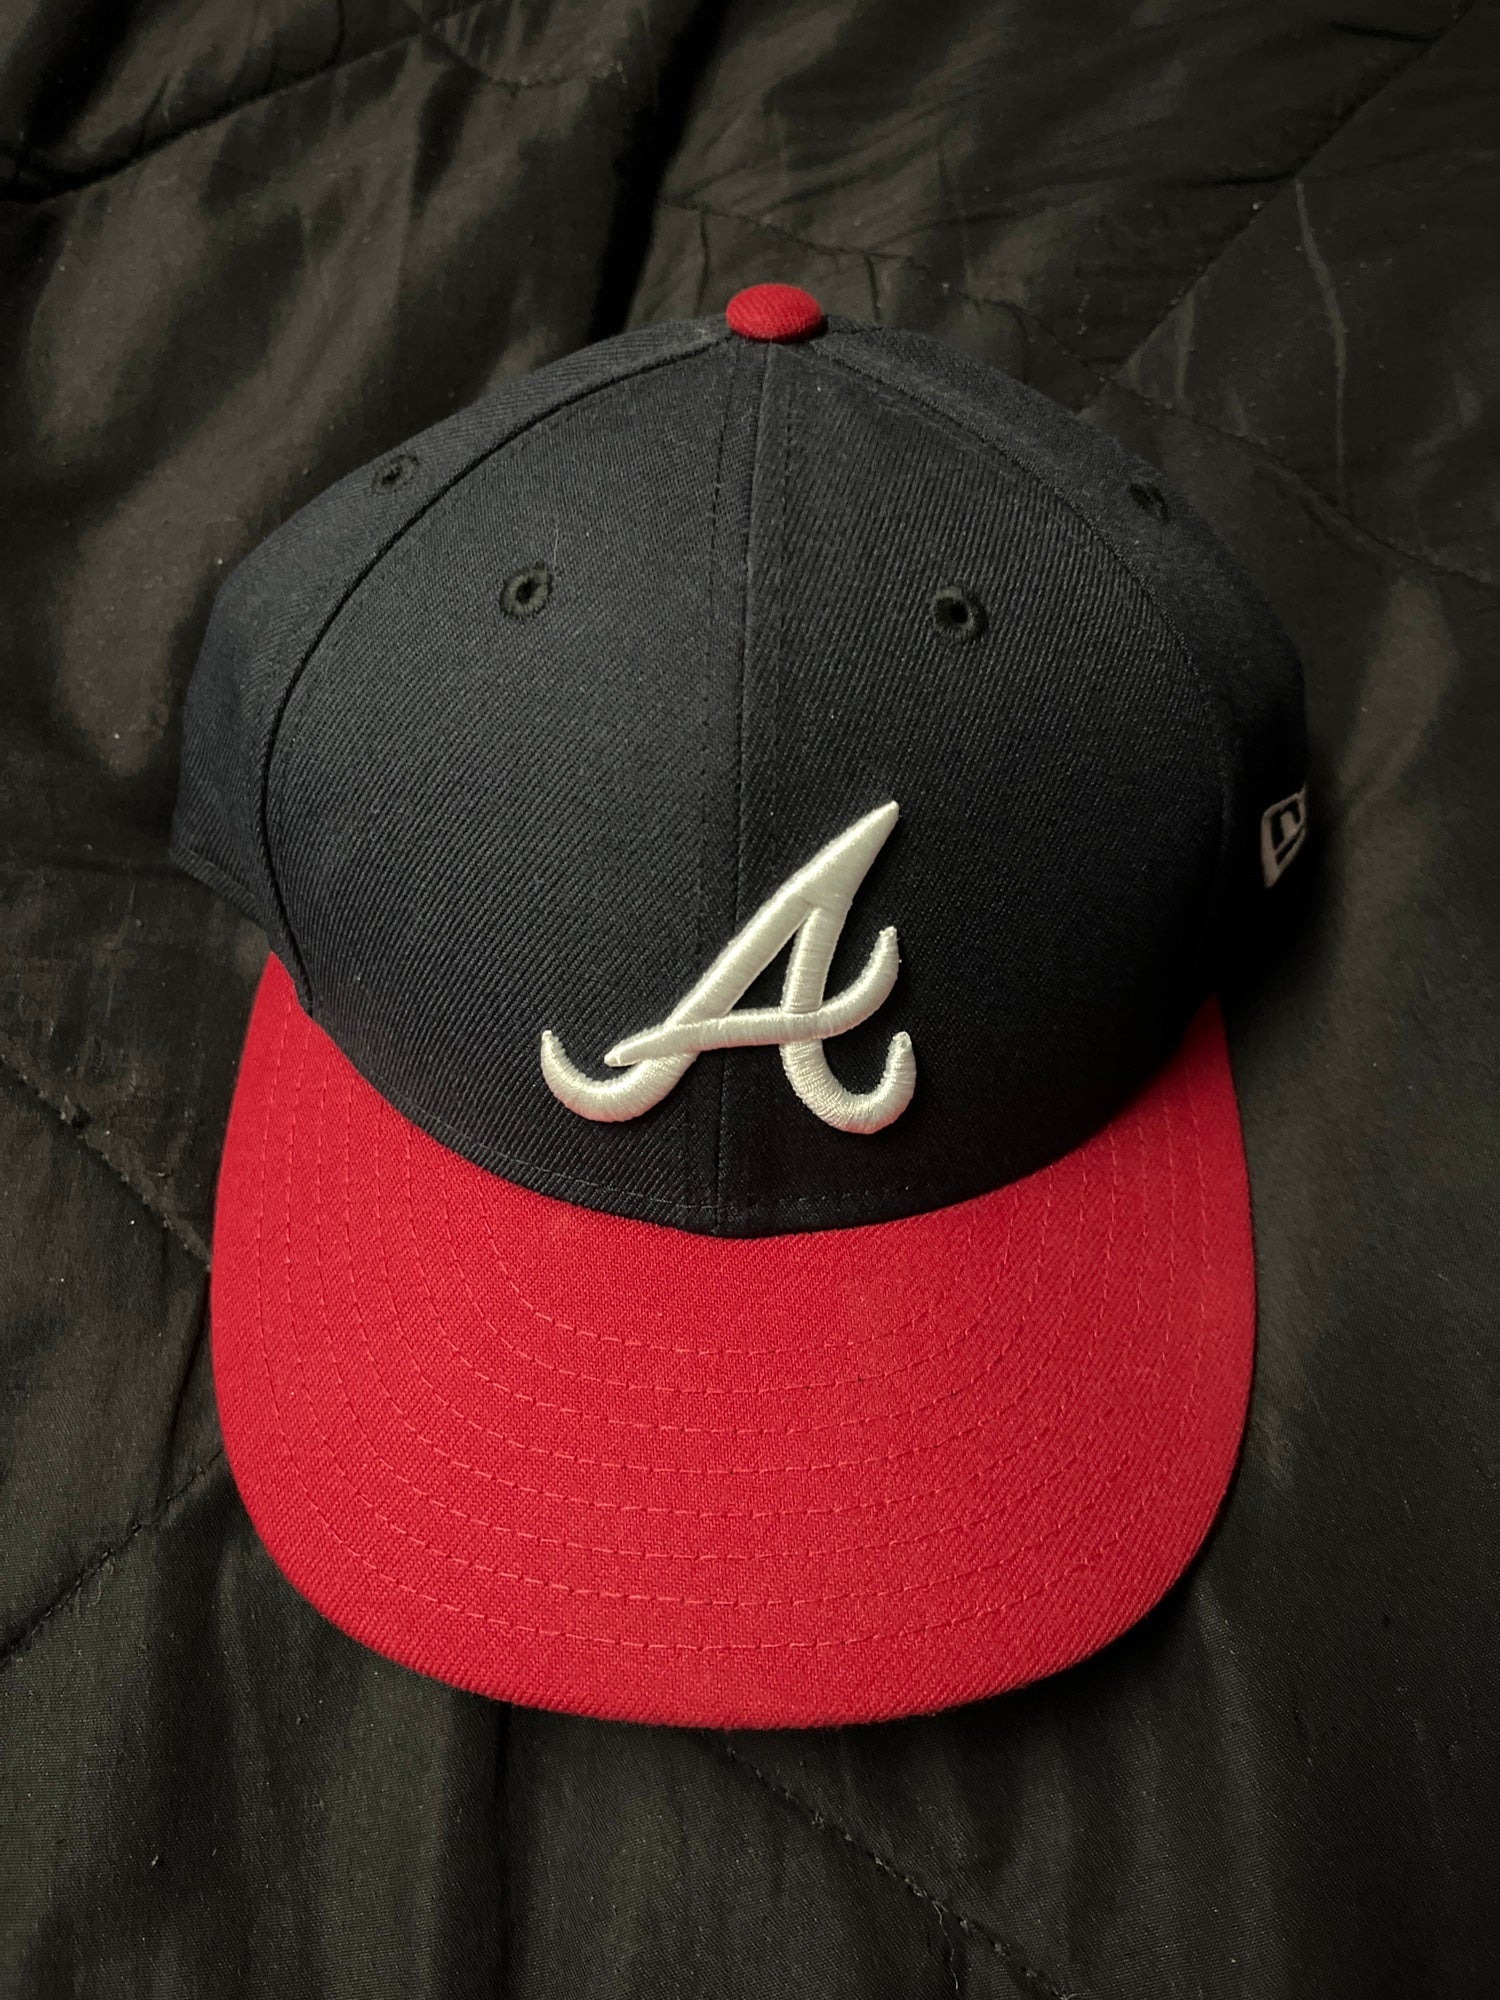 New Era Atlanta Braves Pinwheel Hat 7 1/2